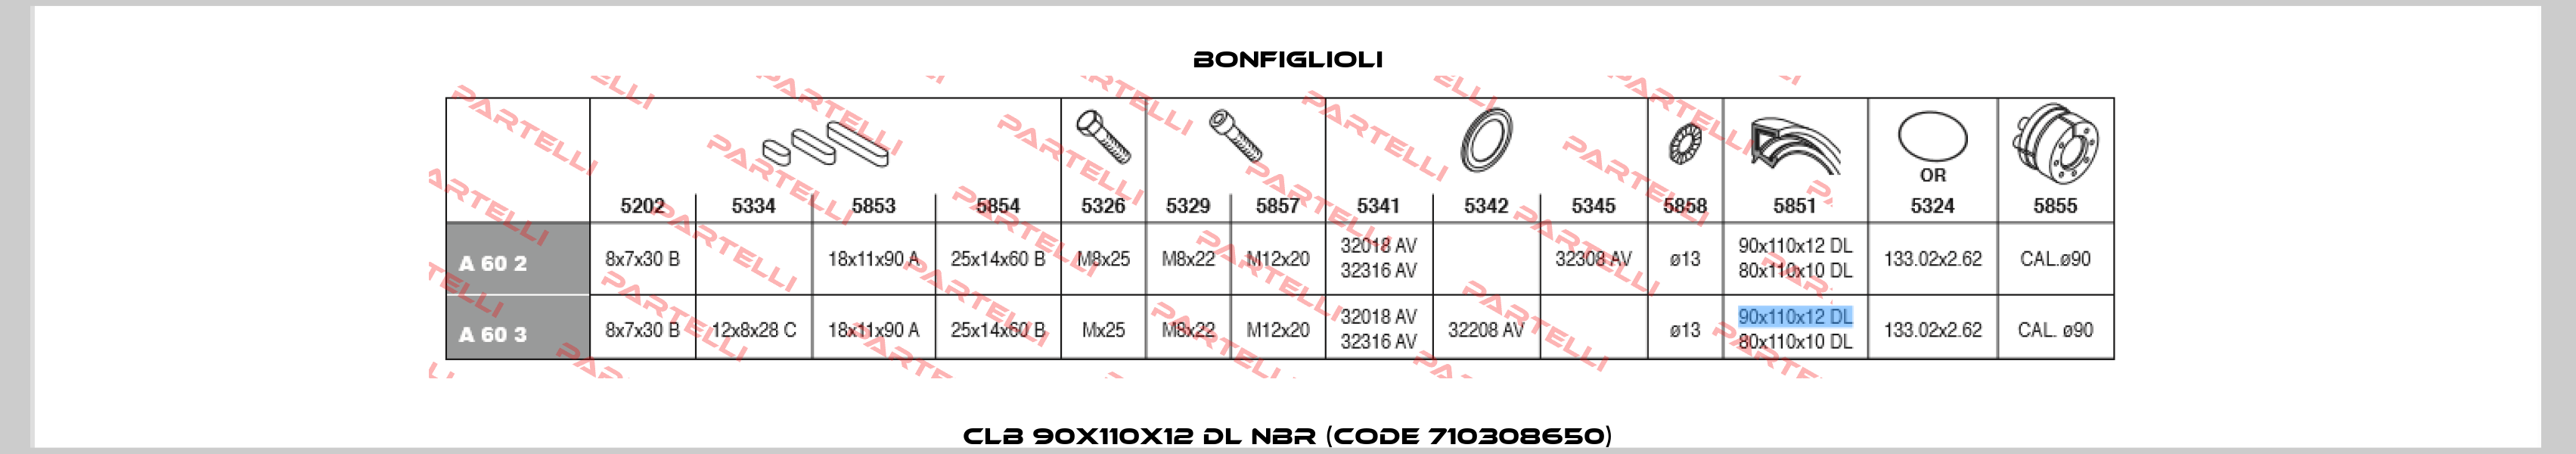 CLB 90X110X12 DL NBR (Code 710308650) Bonfiglioli